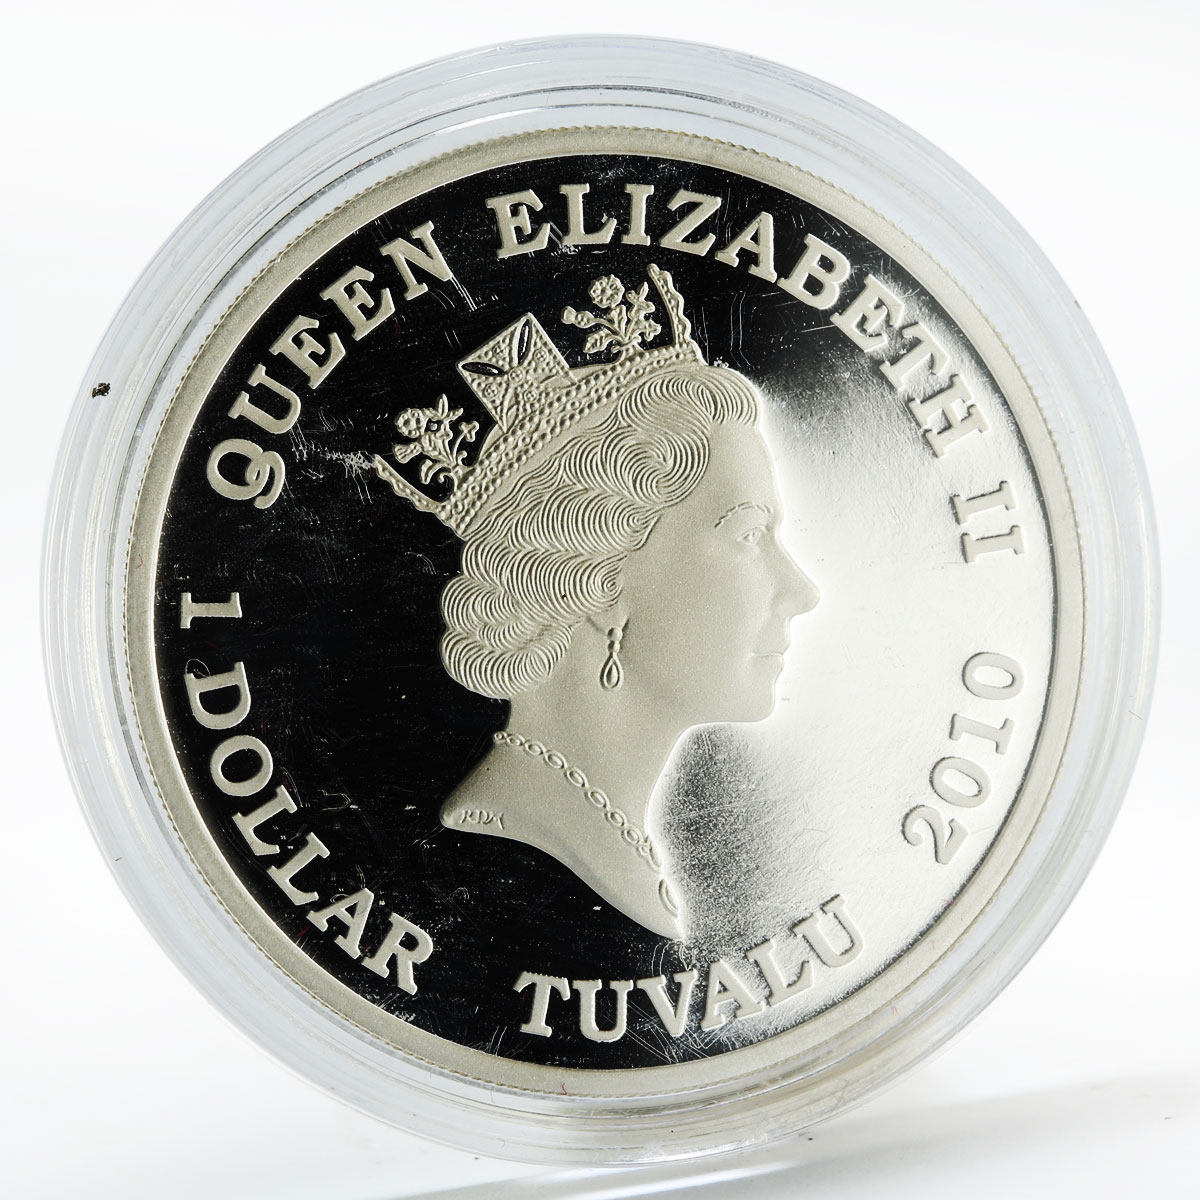 Tuvalu 1 dollar Trucks R500 colored silver coin 2010